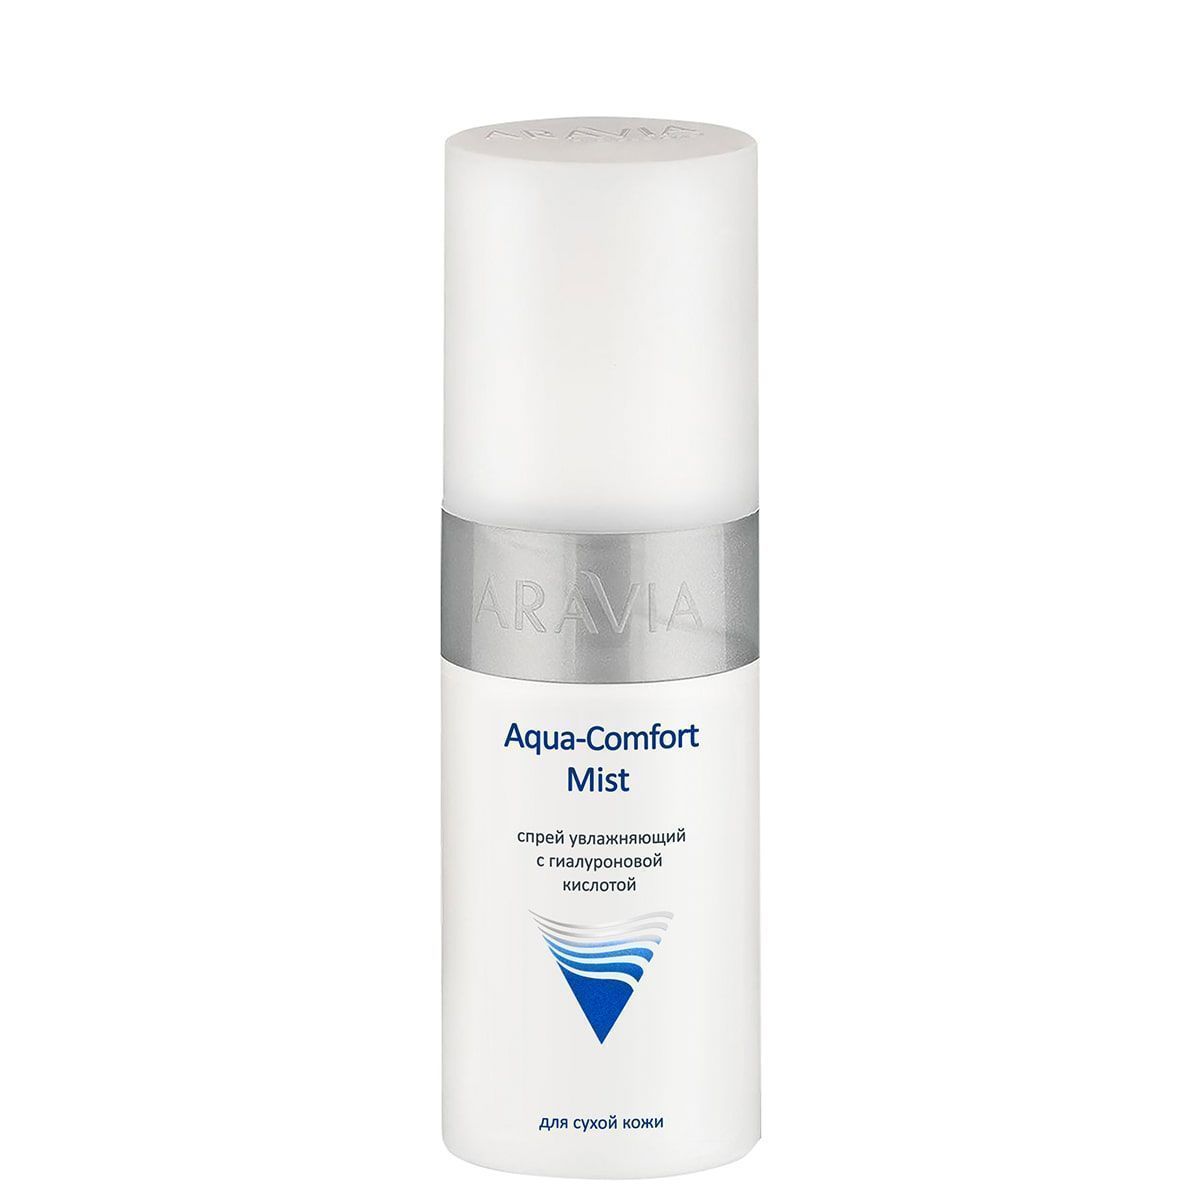 Спрей увлажняющий с гиалуроновой кислотой Aqua Comfort Mist, 150 мл, ARAVIA Professional. 9105